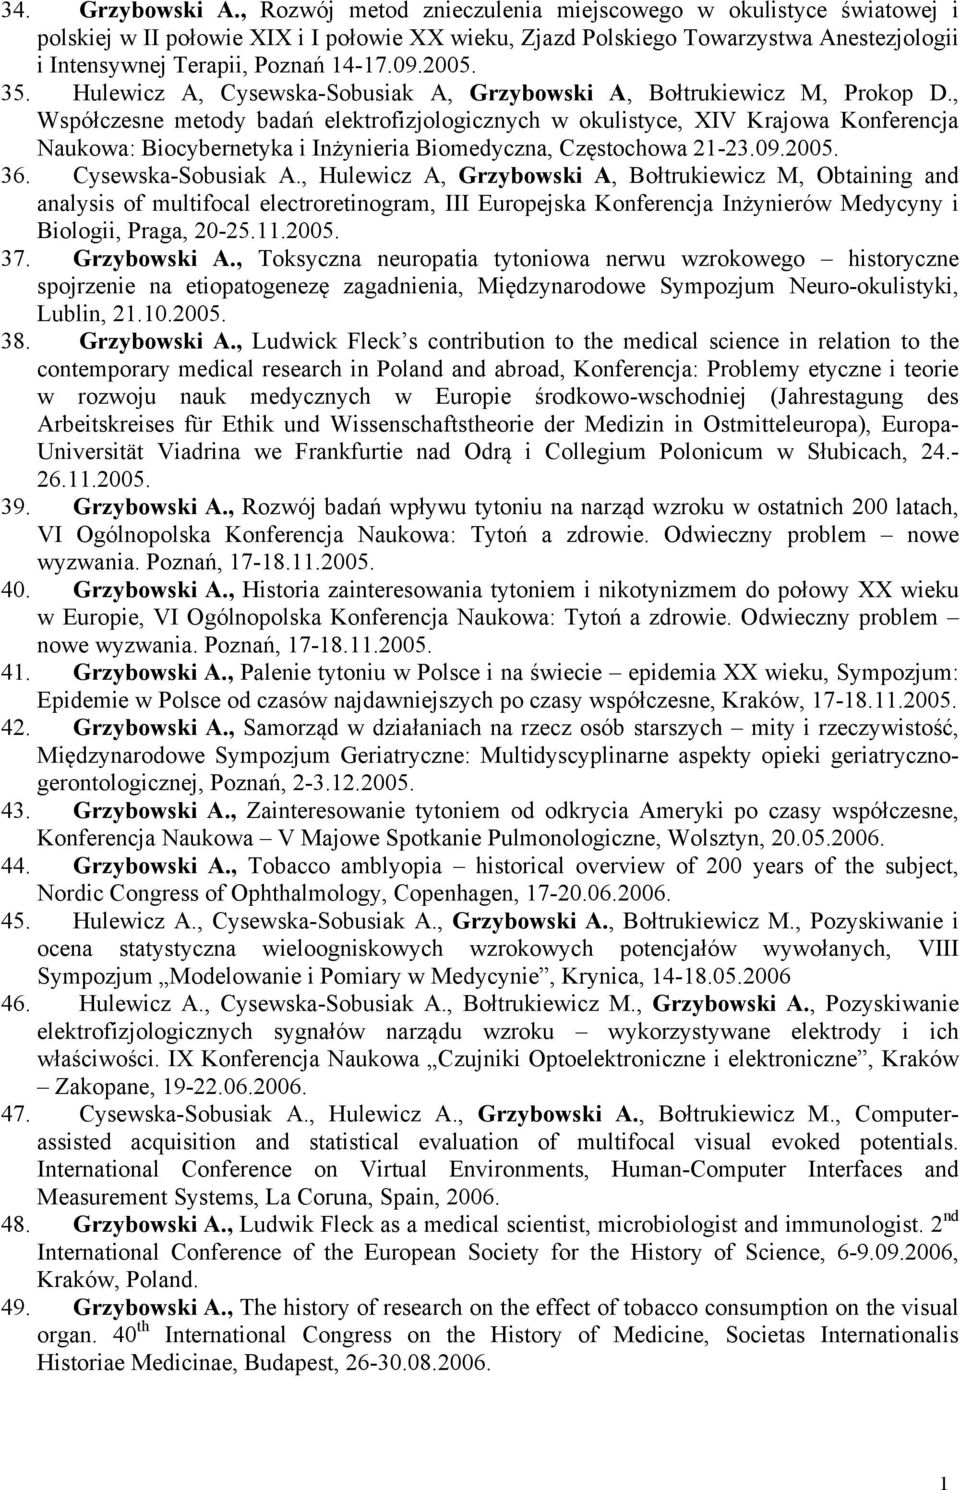 35. Hulewicz A, Cysewska-Sobusiak A, Grzybowski A, Bołtrukiewicz M, Prokop D.